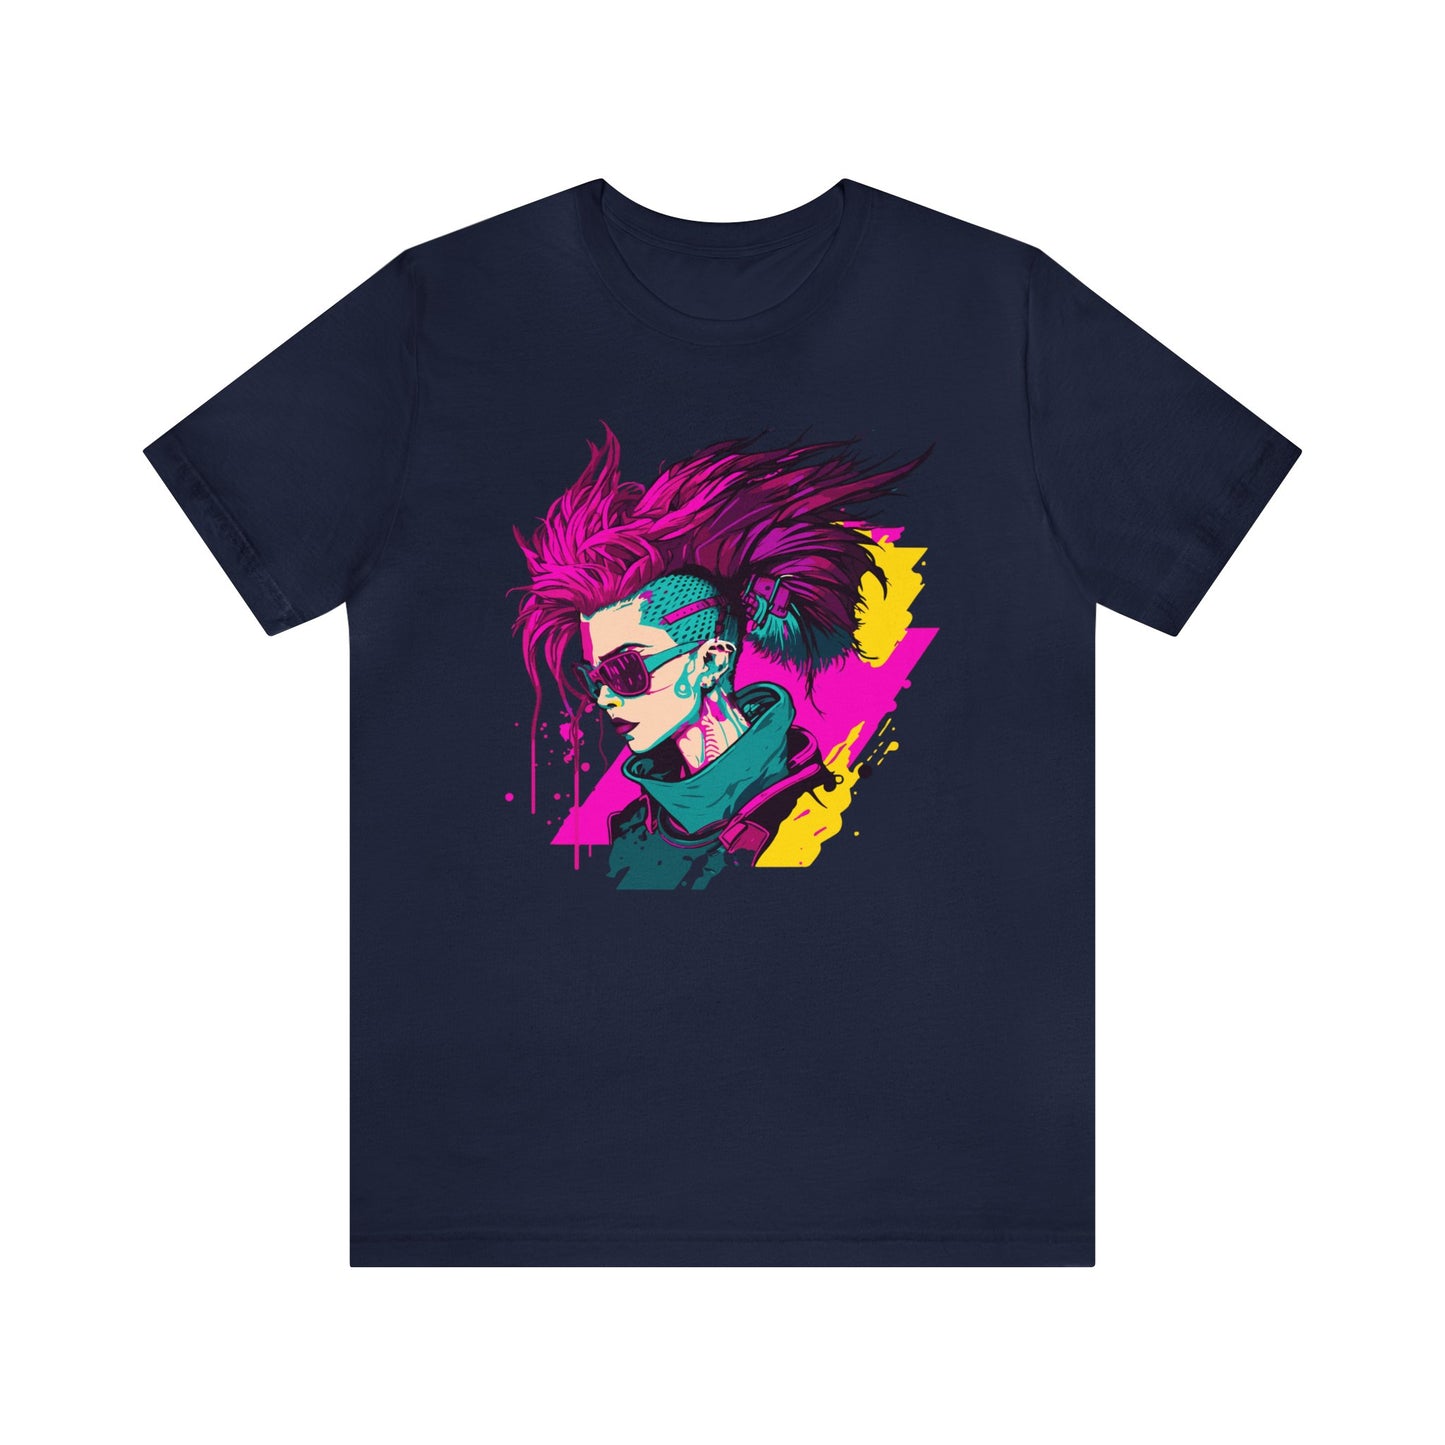 Cyberpunk T-Shirt, Hacker Runner Shirt